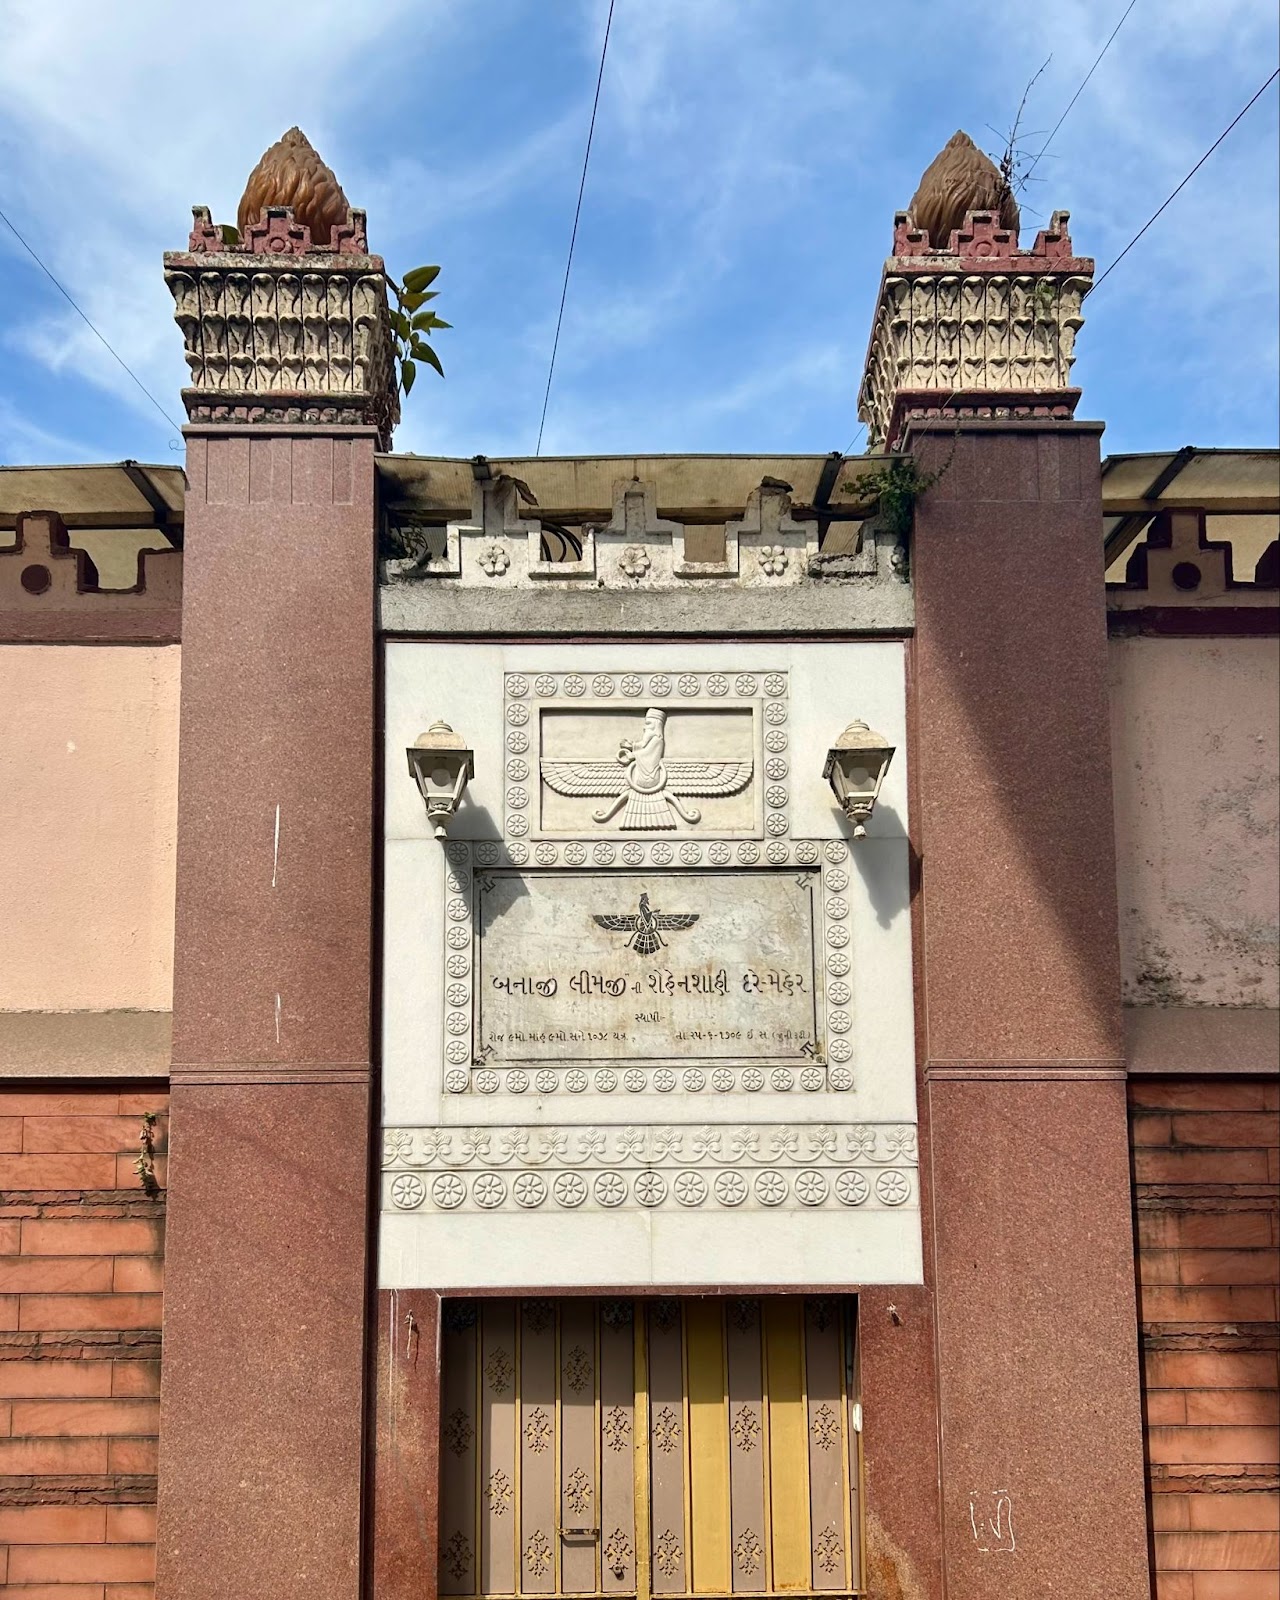 Banaji Limji Agiary - Đền Hoả Giáo cổ nhất tại Mumbai, được xây dựng vào năm 1709. Bạn có thể dễ dàng nhìn thấy biểu tượng của Ahura Mazda ngay phần cổng vào.